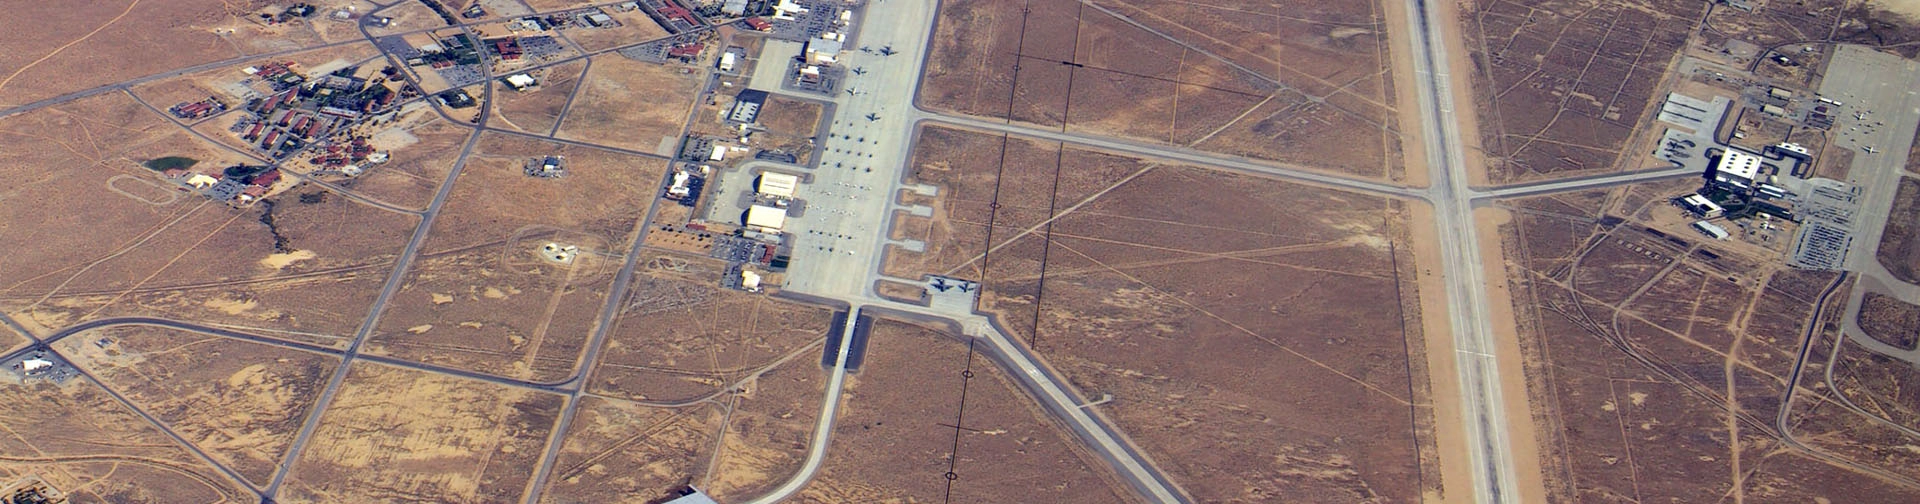 Vue aérienne de la base d'Edwards en Californie